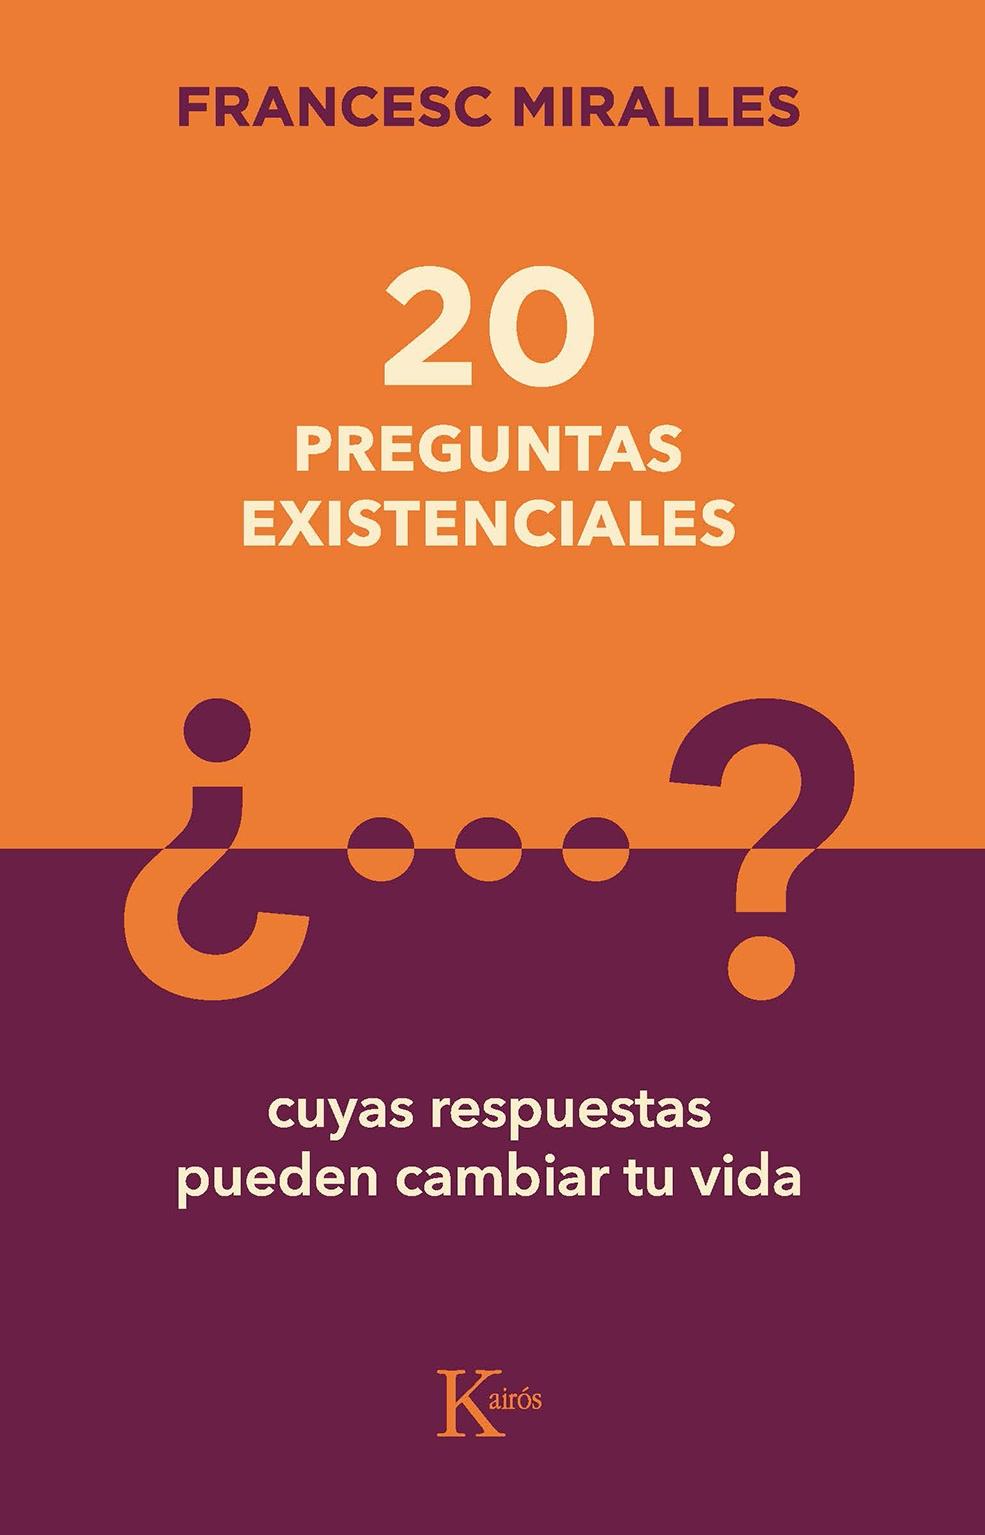 20 PREGUNTAS EXISTENCIALES "CUYAS RESPUESTAS PUEDEN CAMBIAR TU VIDA.". 